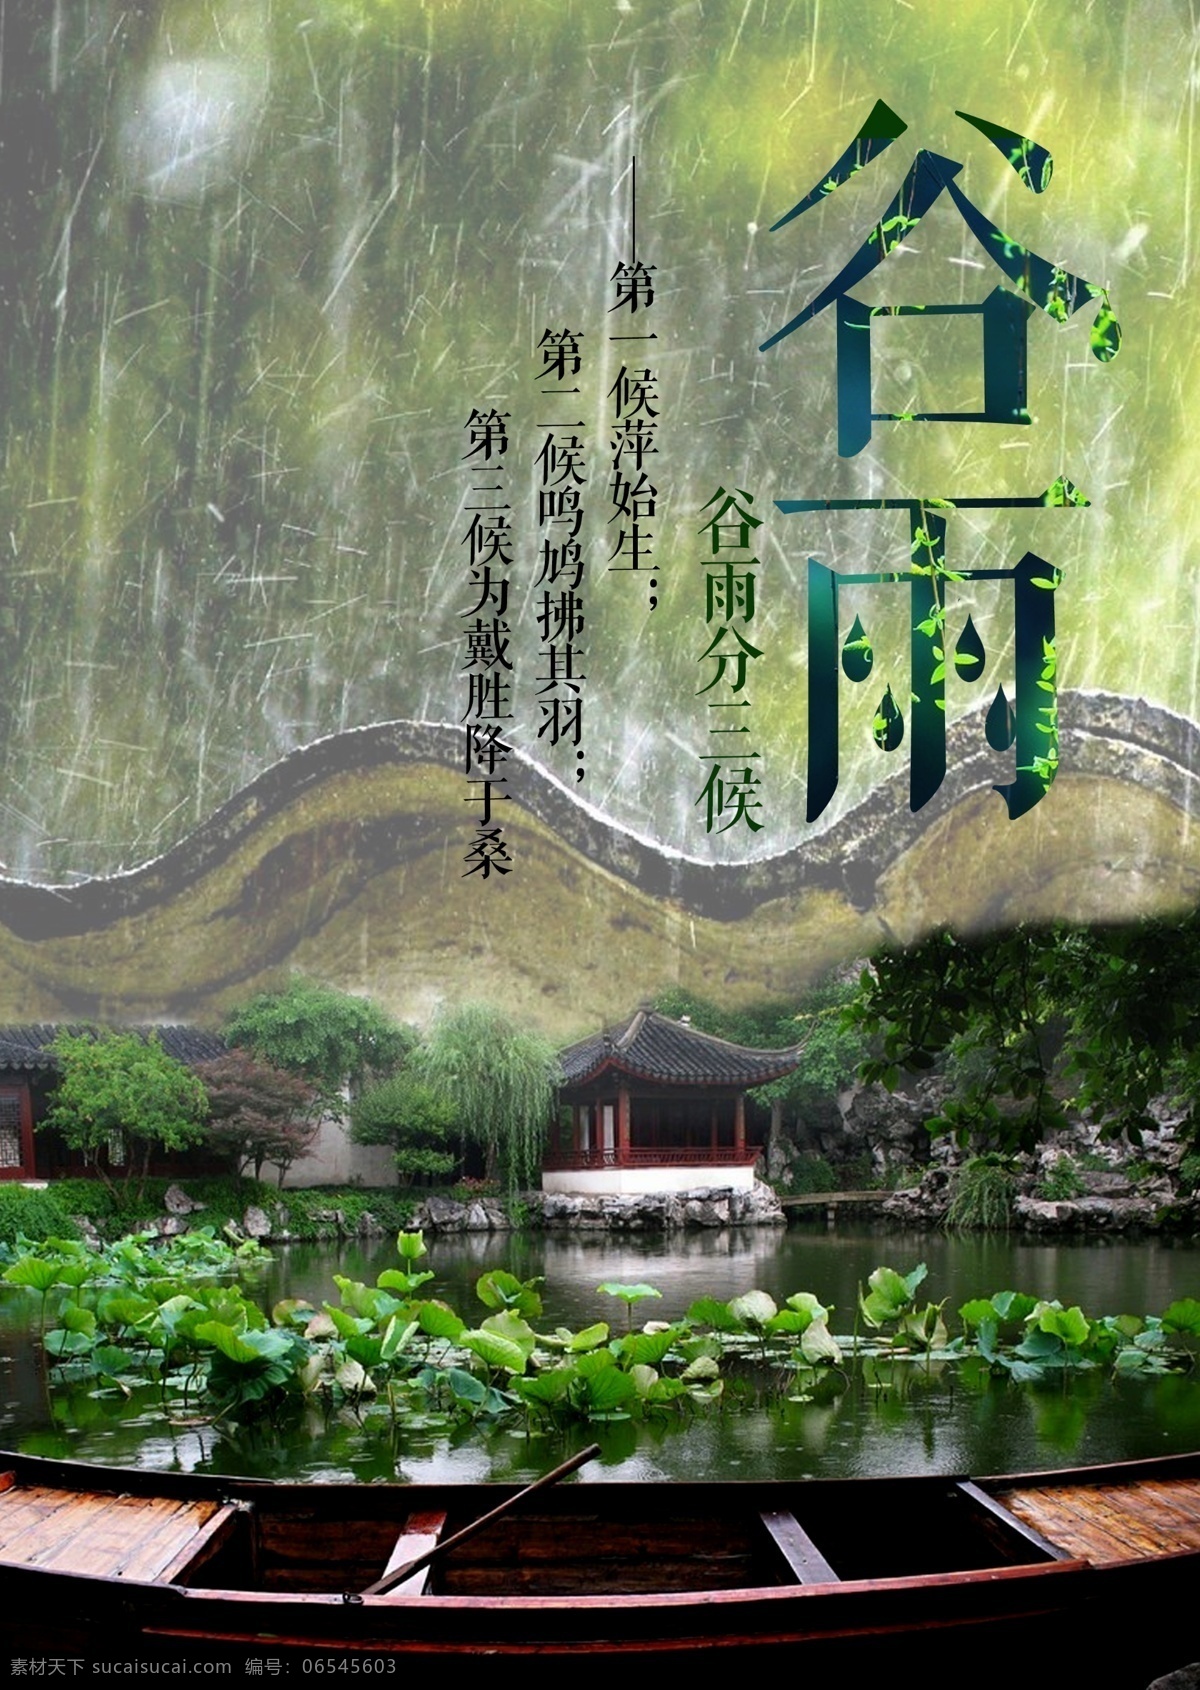 谷雨节气海报 谷雨时节 小雨霏霏 莲动荷舟 中国风 绿色